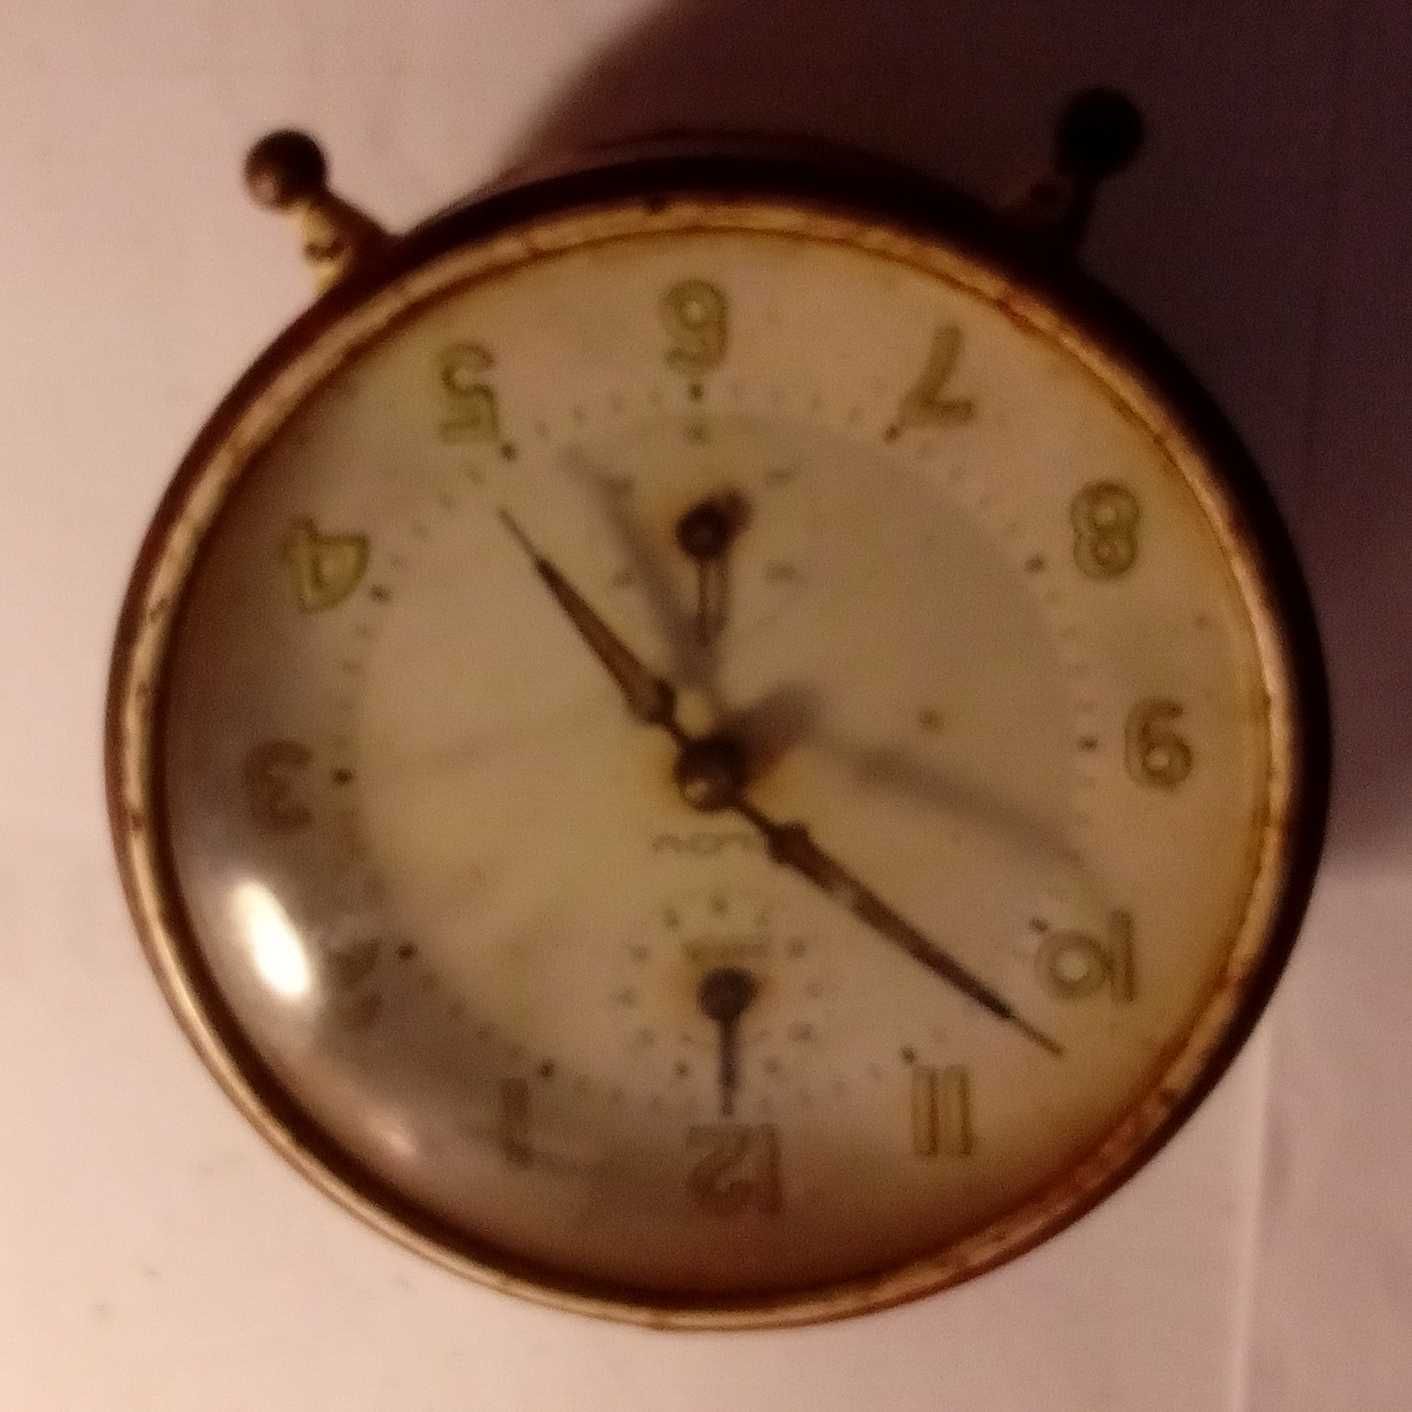 relógio despertador muito antigo